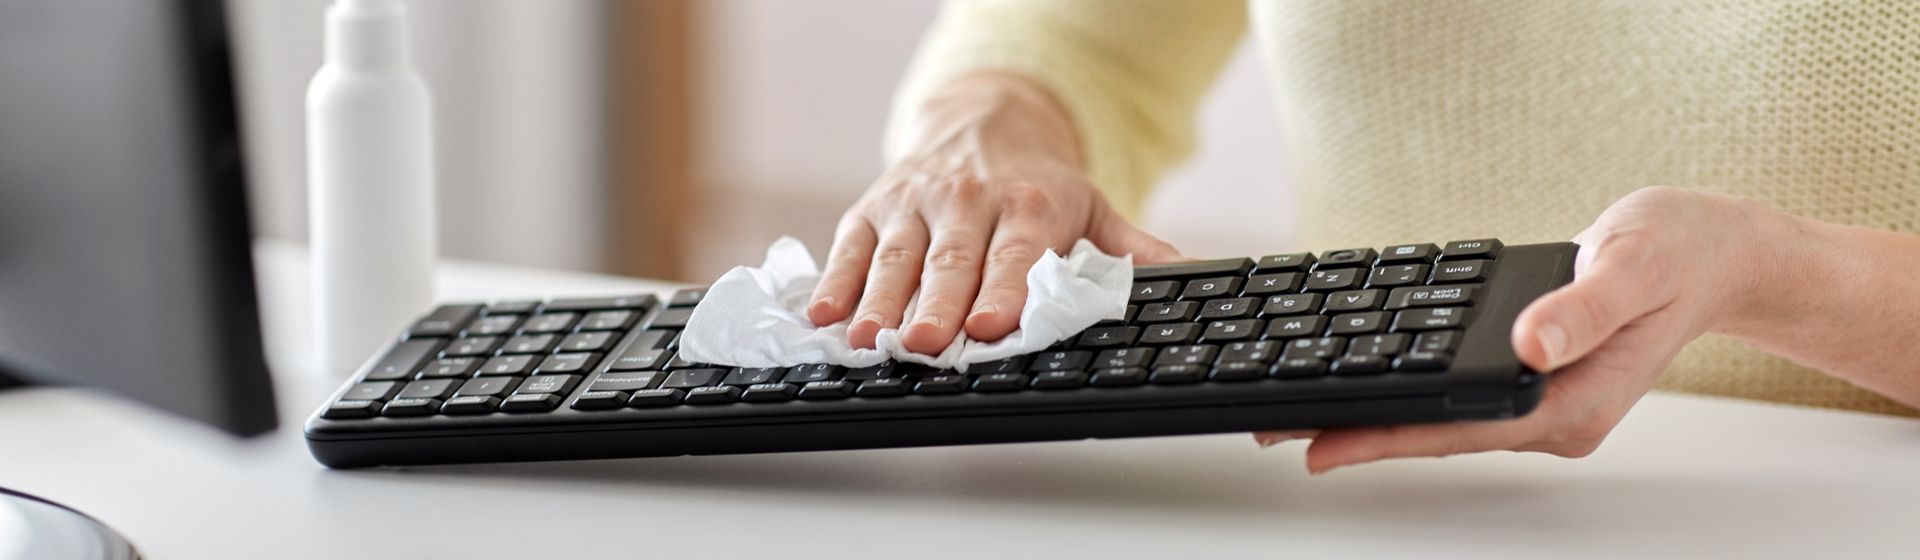 Capa do post: Como limpar notebook, mouse e teclado para evitar contágio por coronavírus